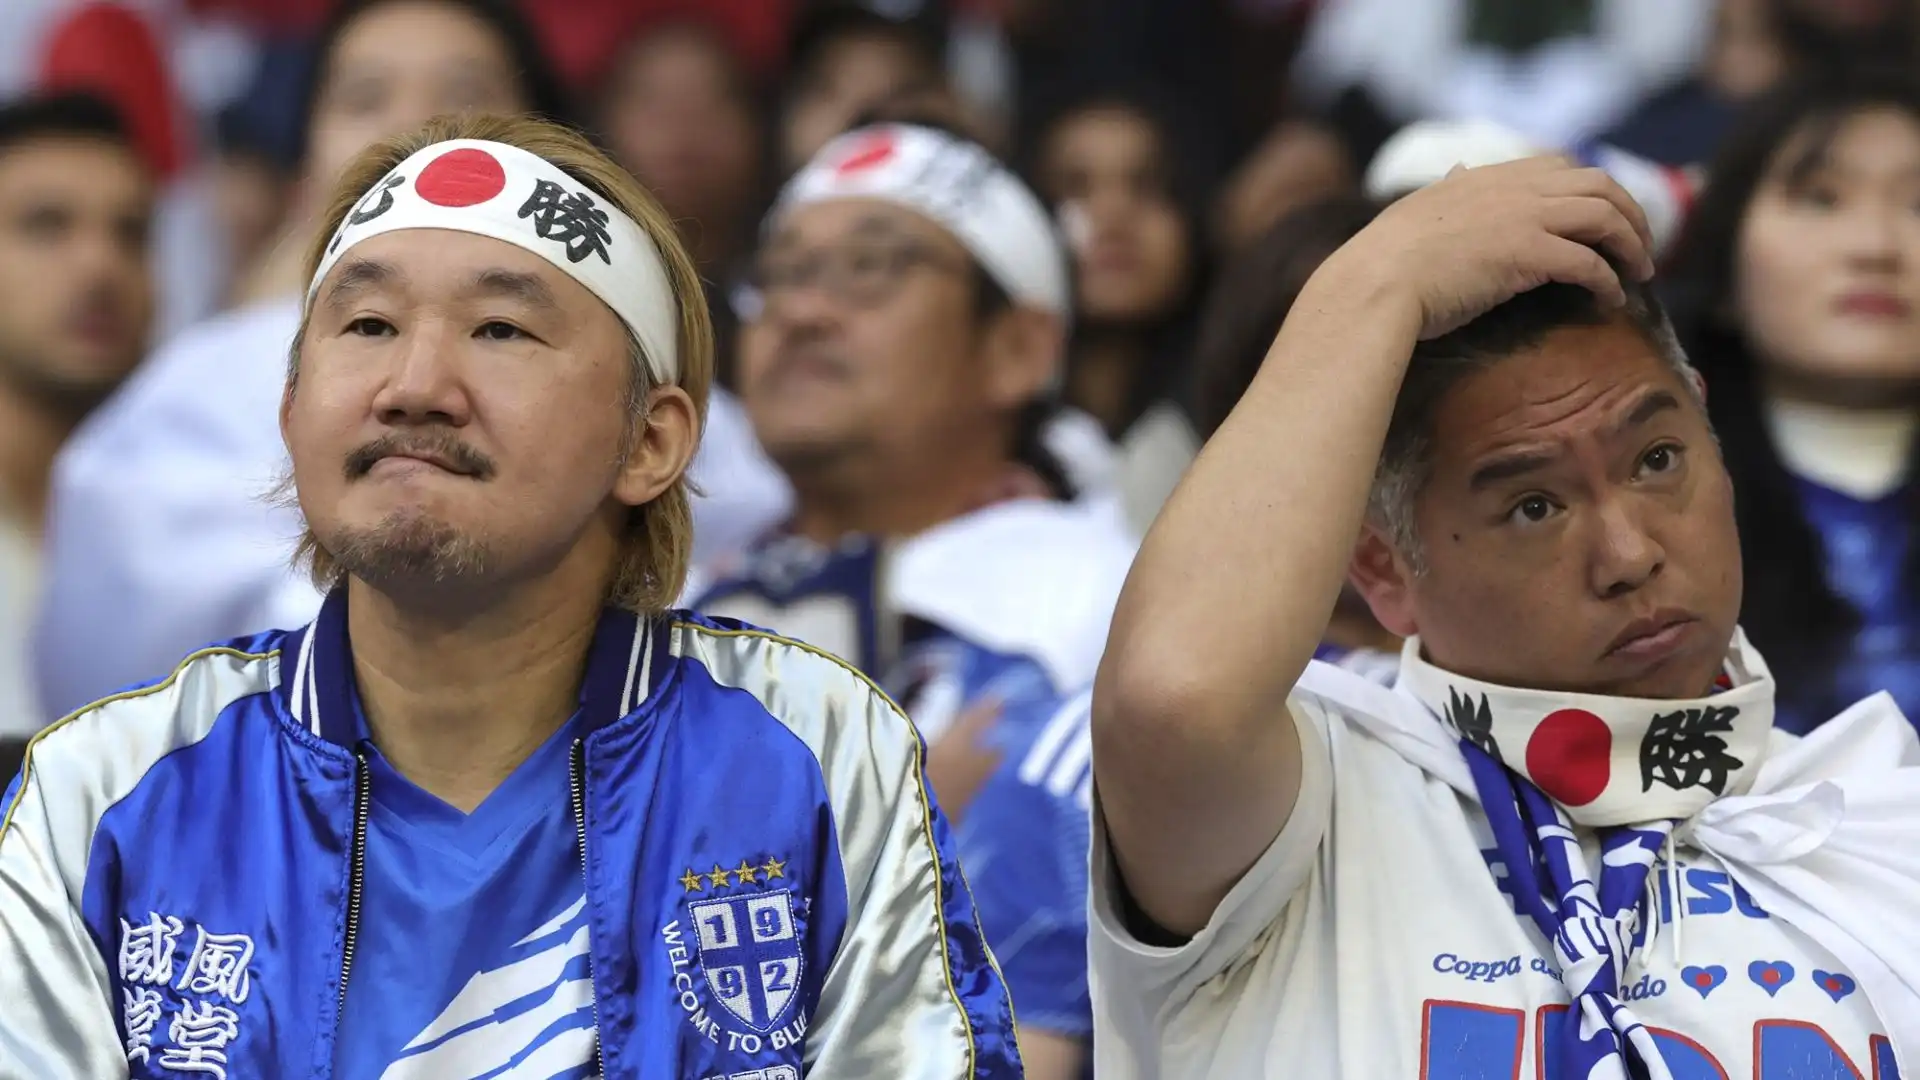 Grande delusione per il Giappone, che arrivava alla partita con i favori del pronostico